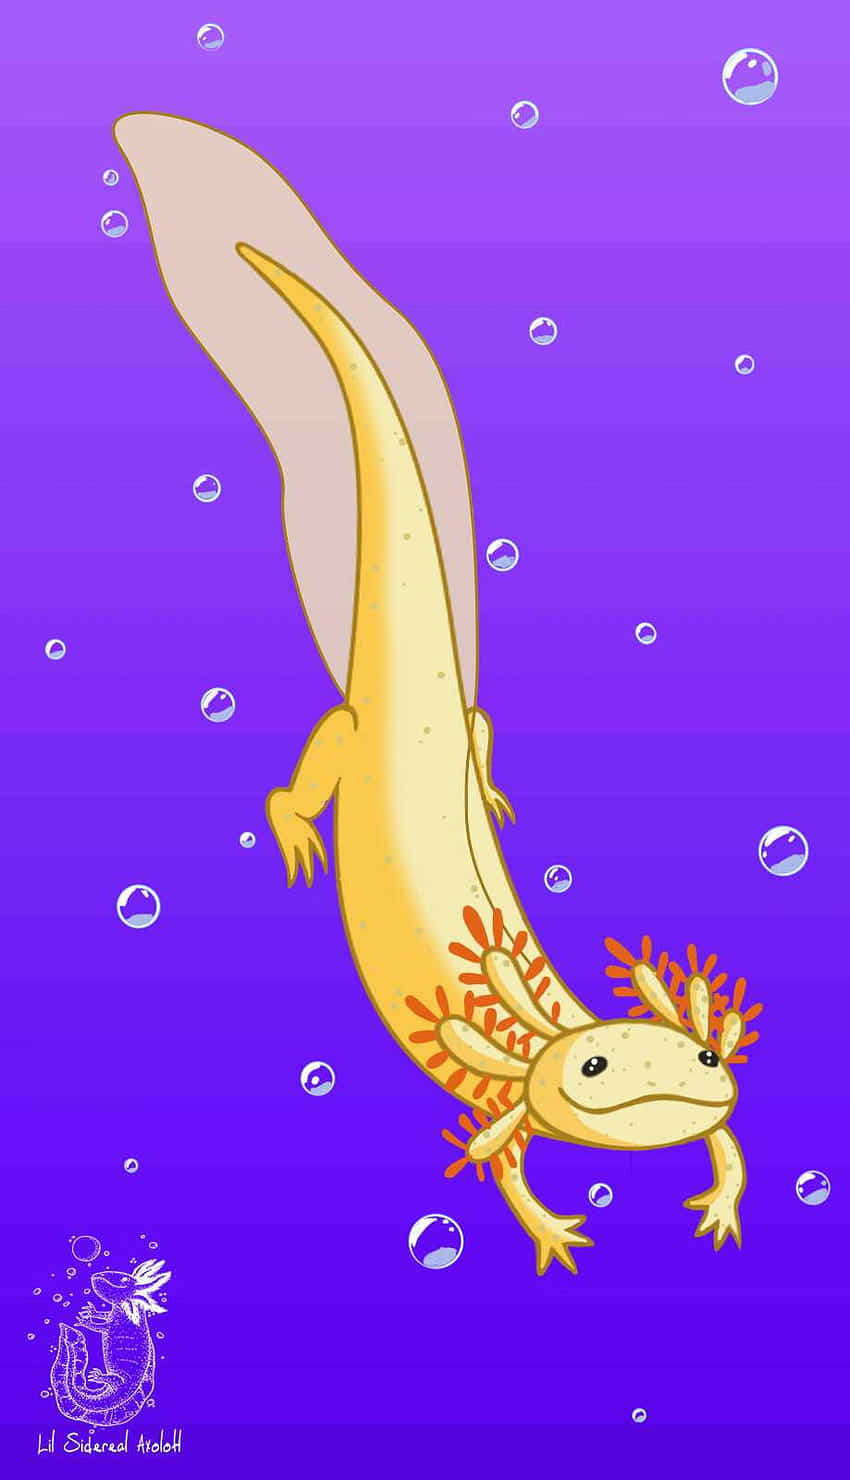 Swimming Cute Axolotl Digital Artwork Wallpaper